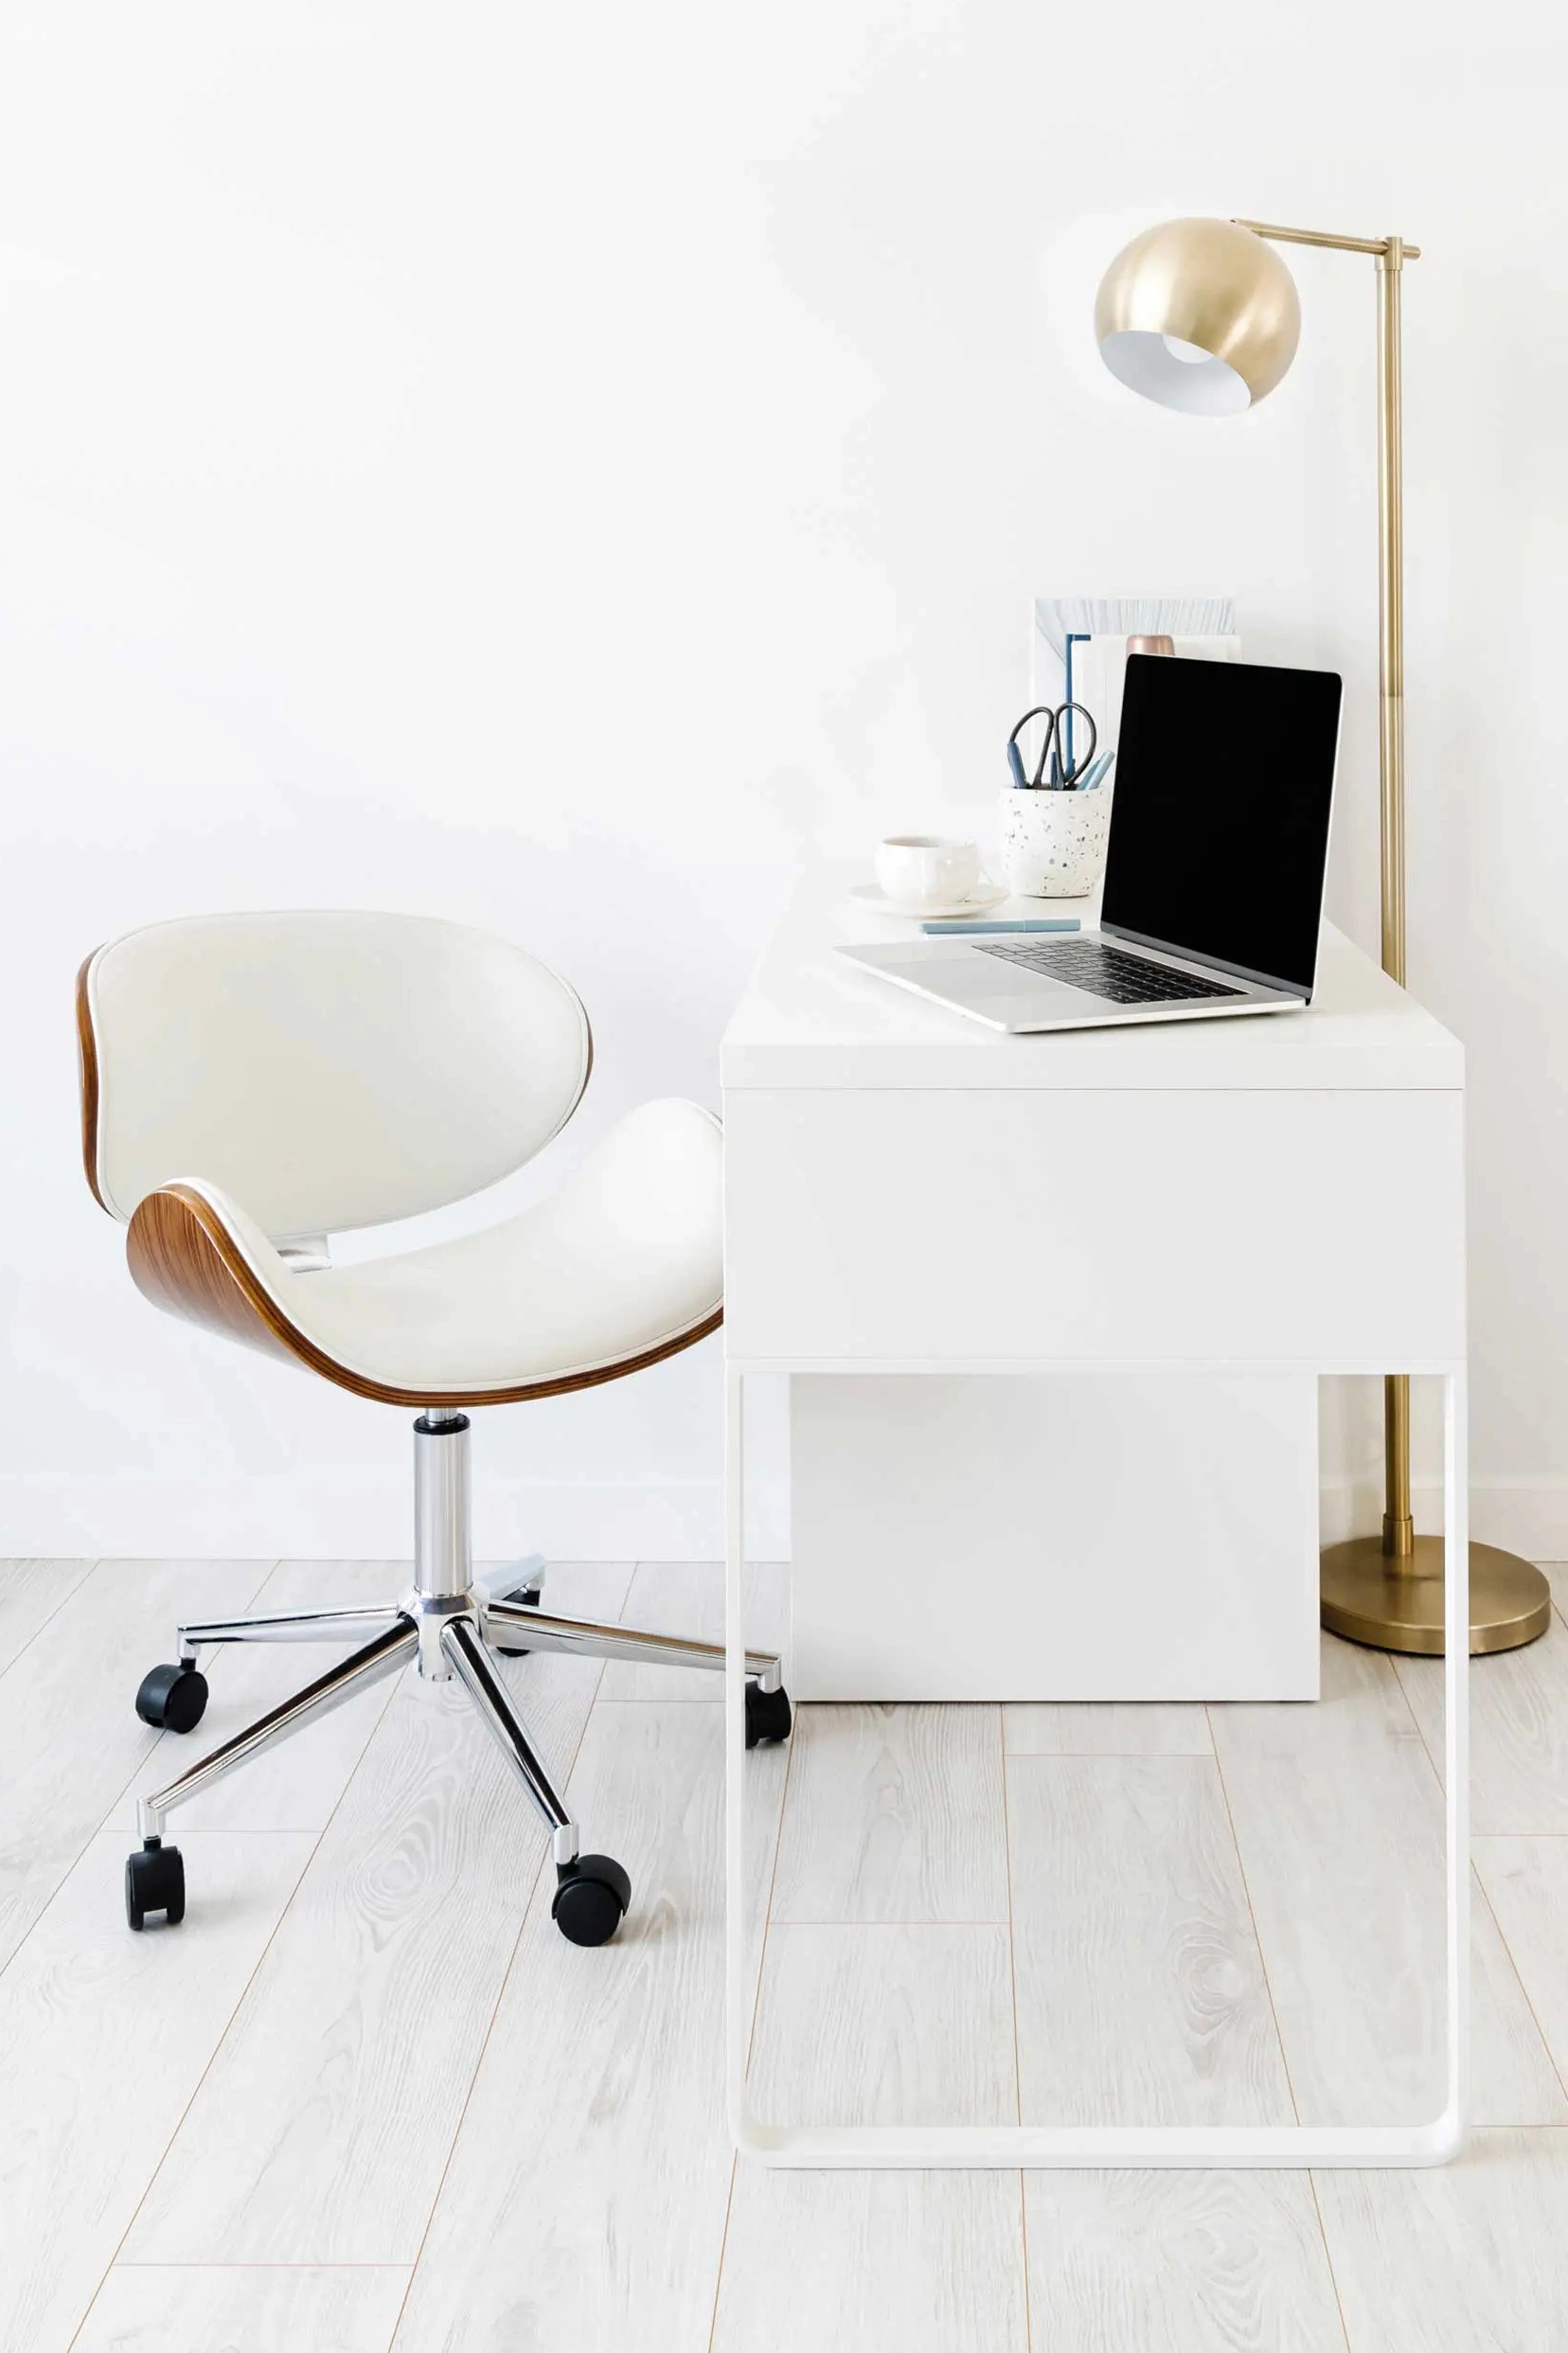 Schön und ergonomisch: Gibt es Schreibtischstühle im skandinavischen Stil die beides können?